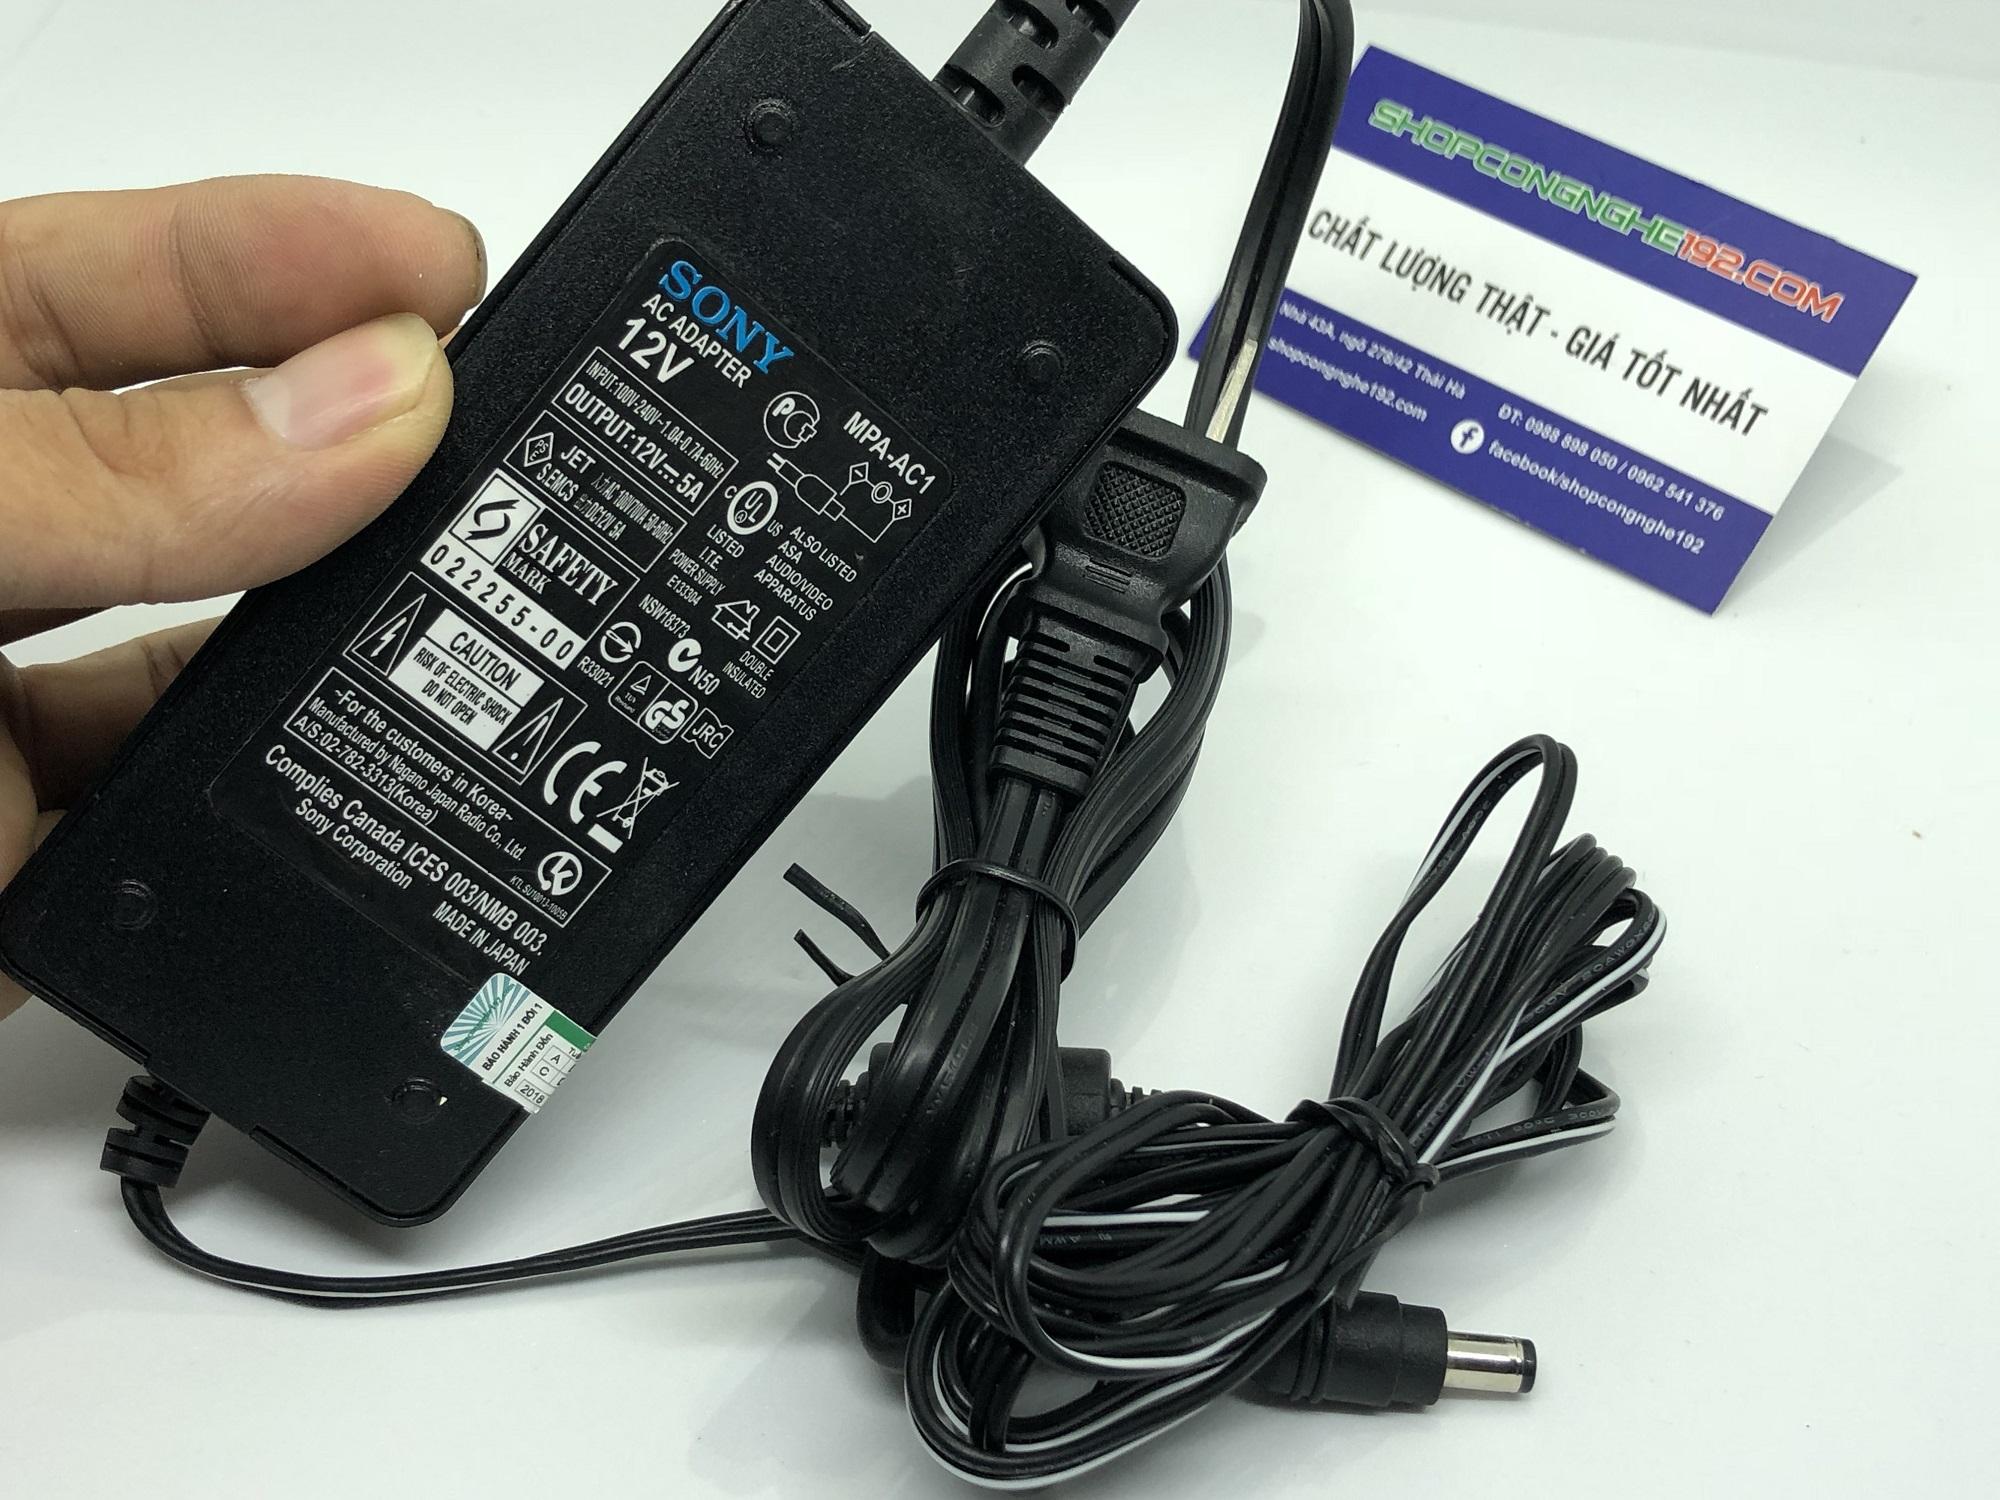 Adapter sony 12v 5a hàng chính hãng made in japan